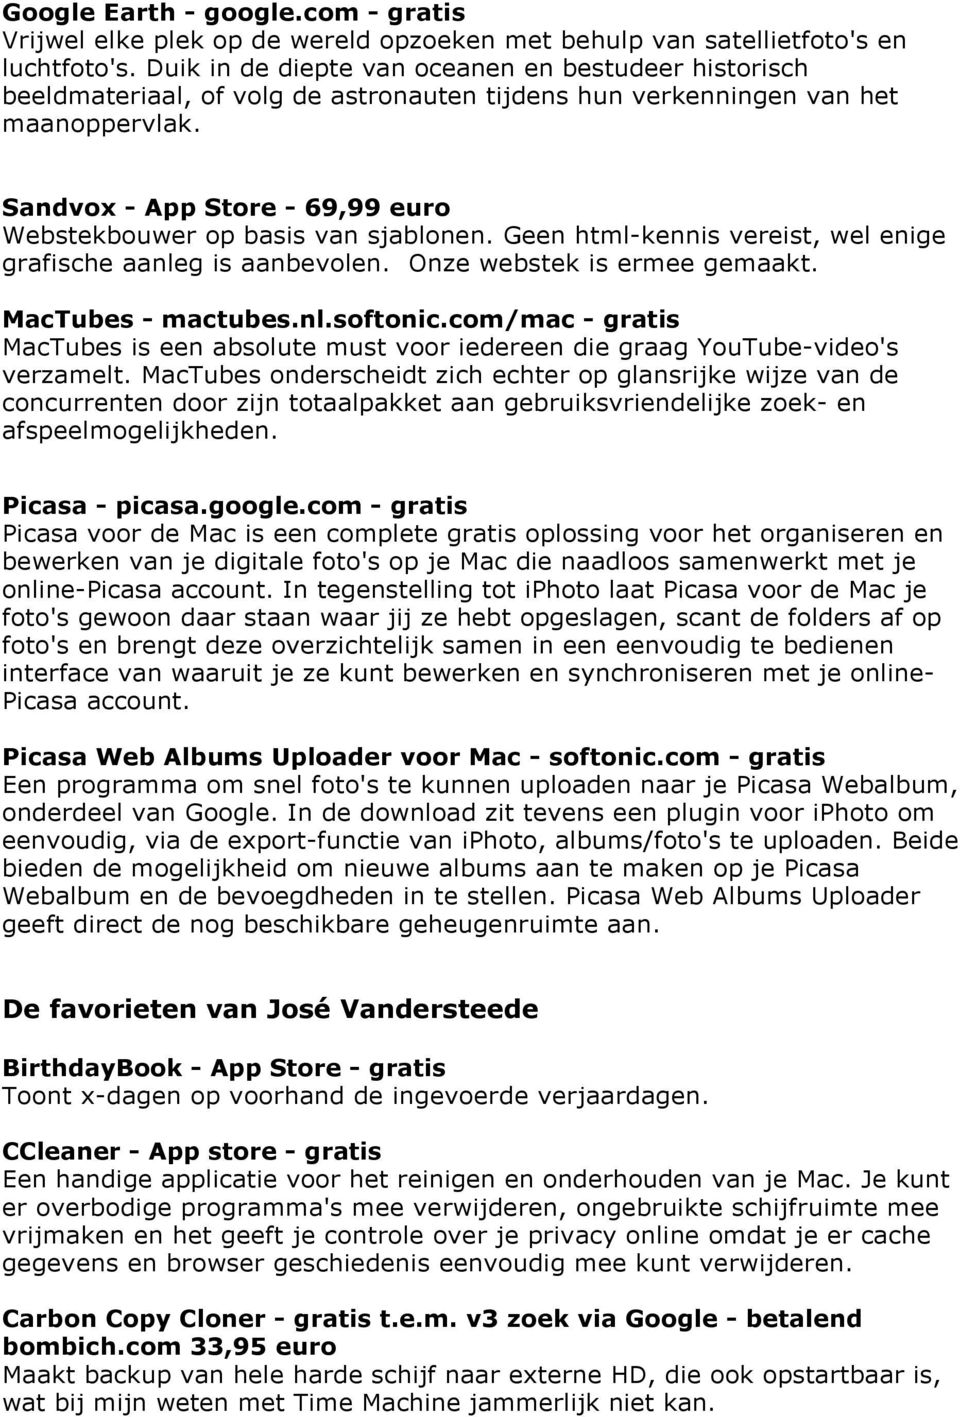 Sandvox - App Store - 69,99 euro Webstekbouwer op basis van sjablonen. Geen html-kennis vereist, wel enige grafische aanleg is aanbevolen. Onze webstek is ermee gemaakt. MacTubes - mactubes.nl.softonic.